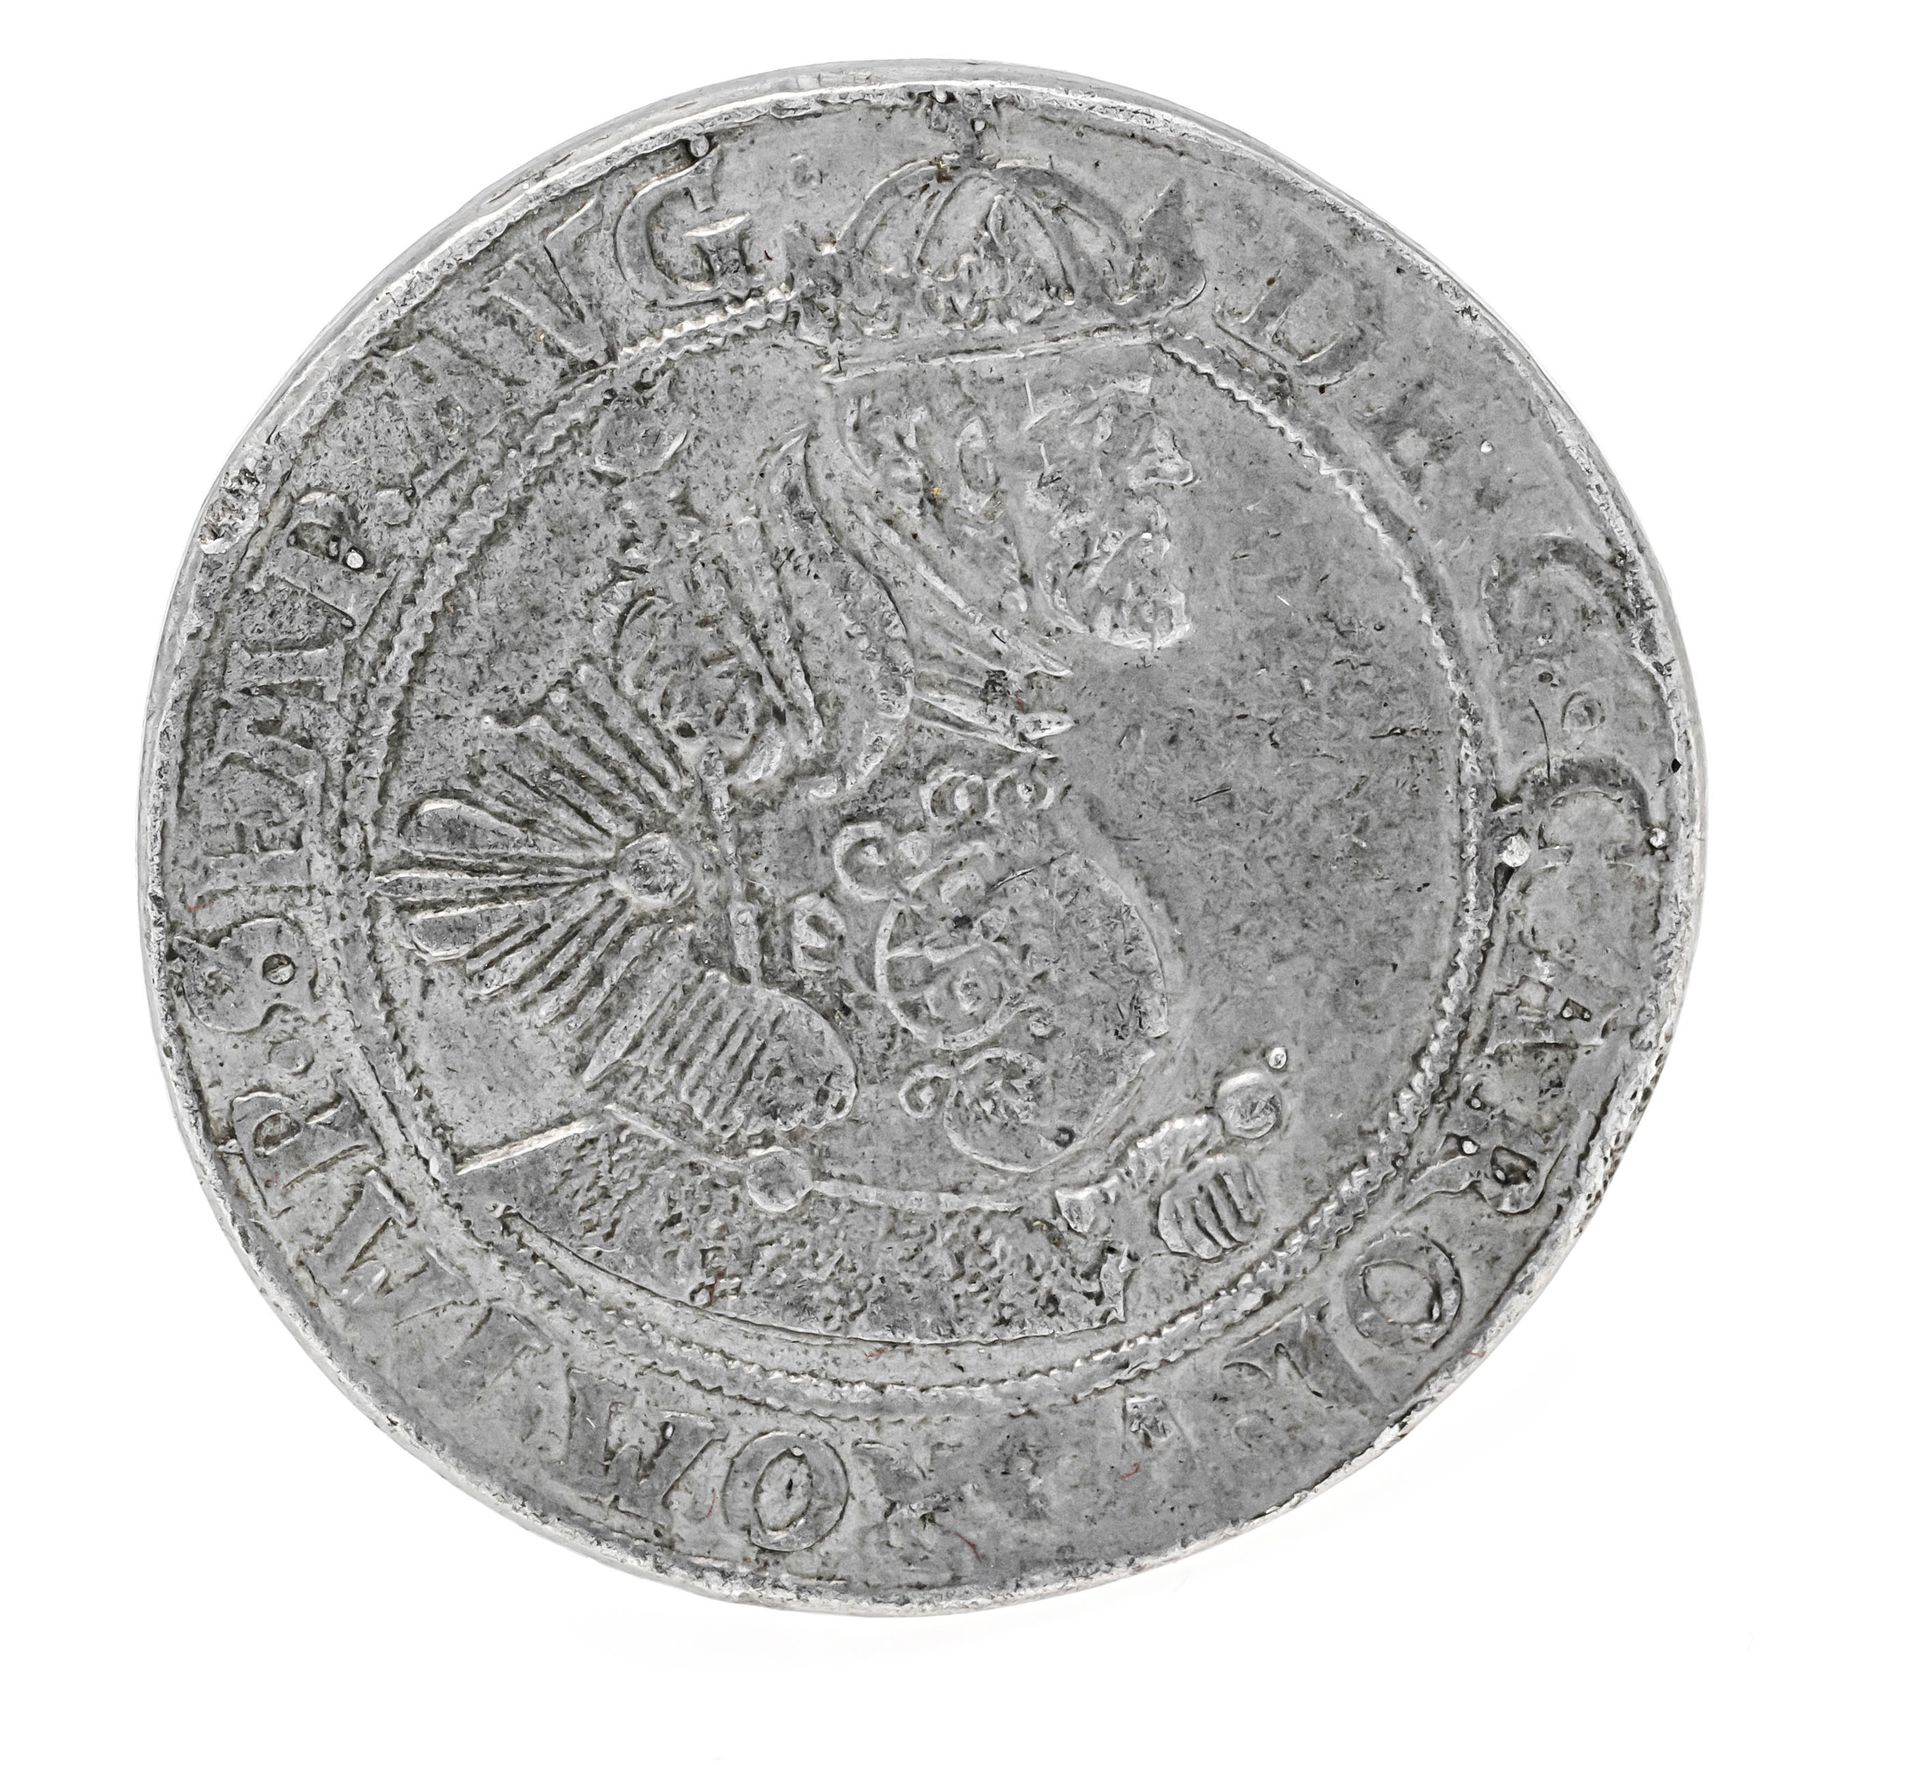 Null 
硬币，塔勒，萨克森州，日期为1551年，28.63克，在包装纸上有旧的刻字和解释 - 没有银。可能是历史上的收藏品。